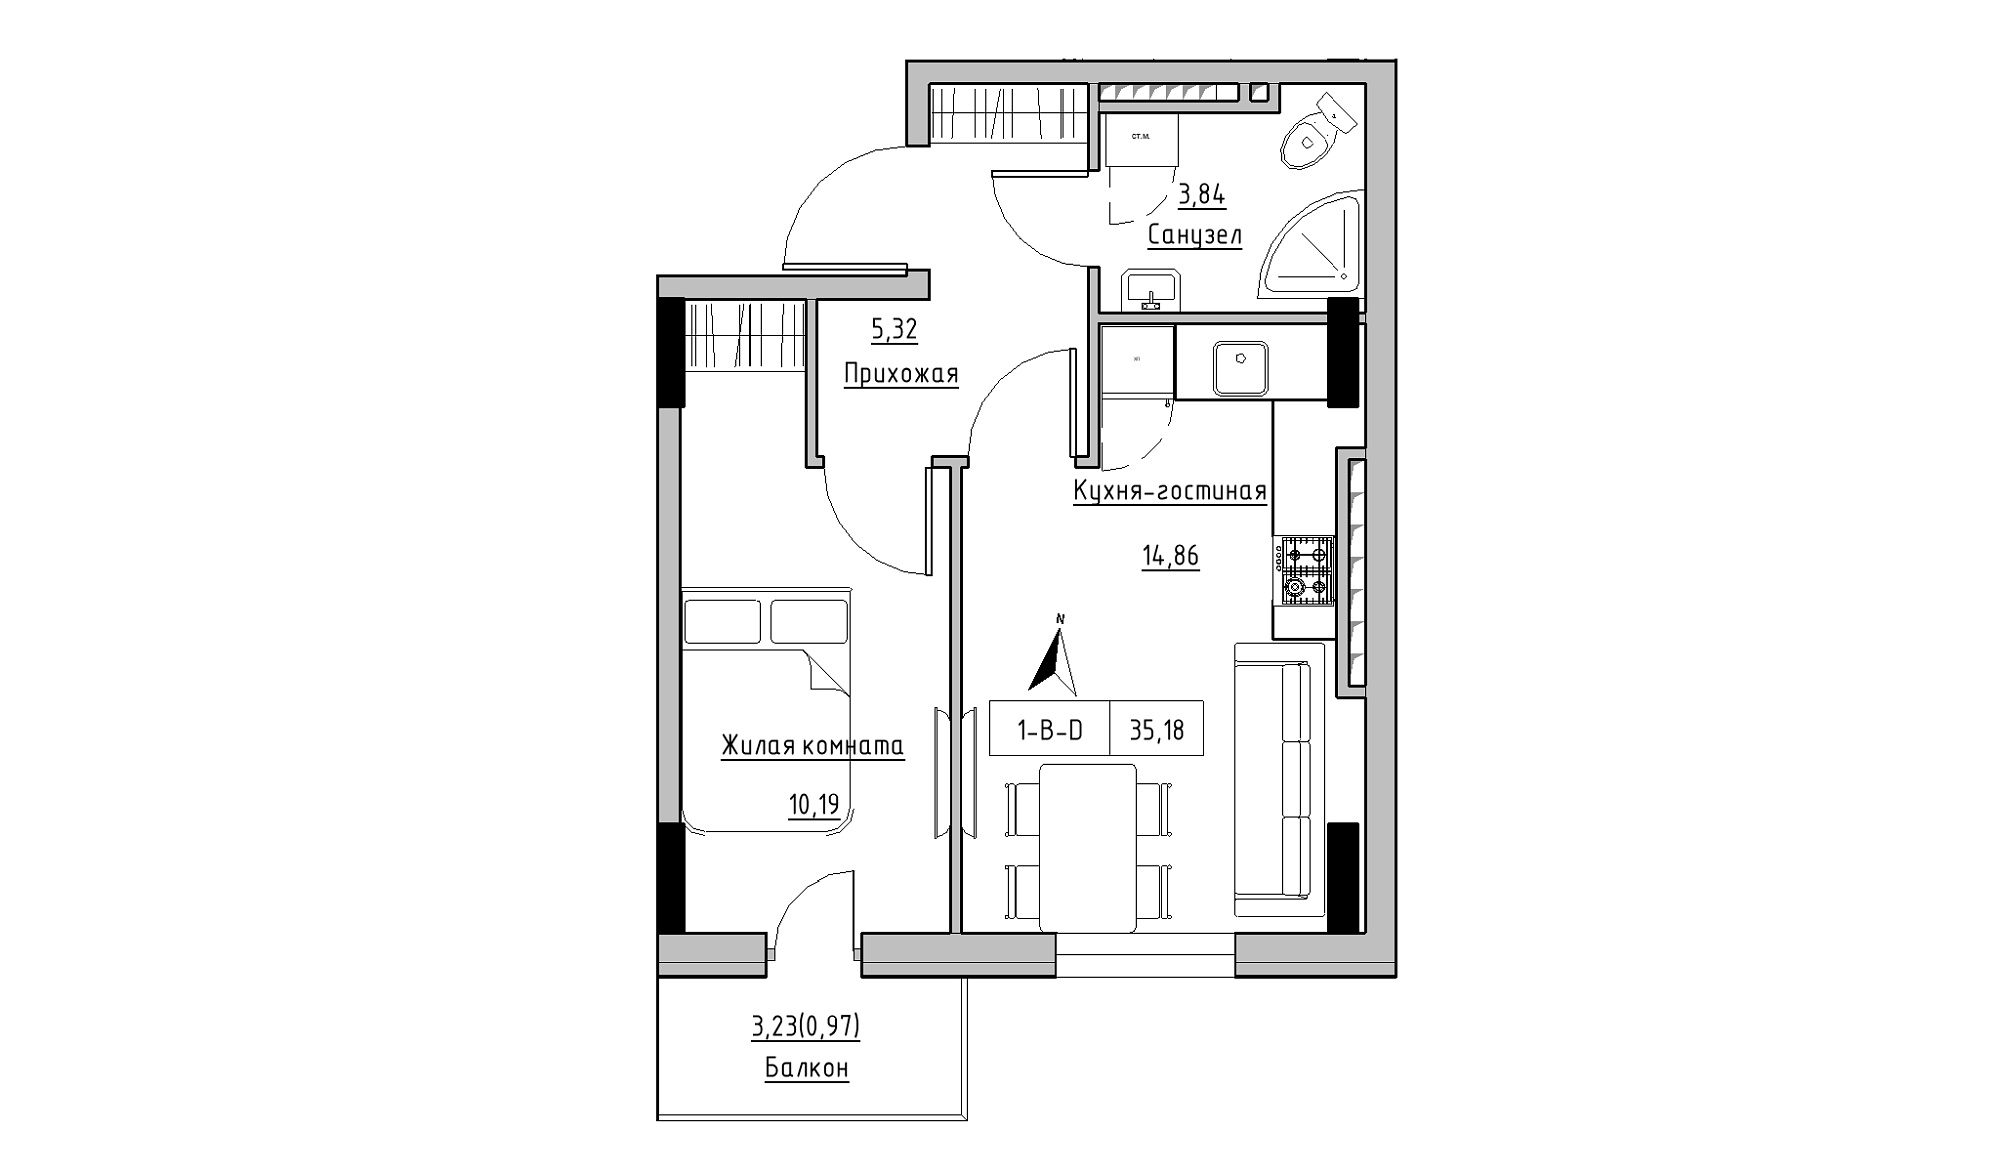 Планировка 1-к квартира площей 35.18м2, KS-025-06/0012.